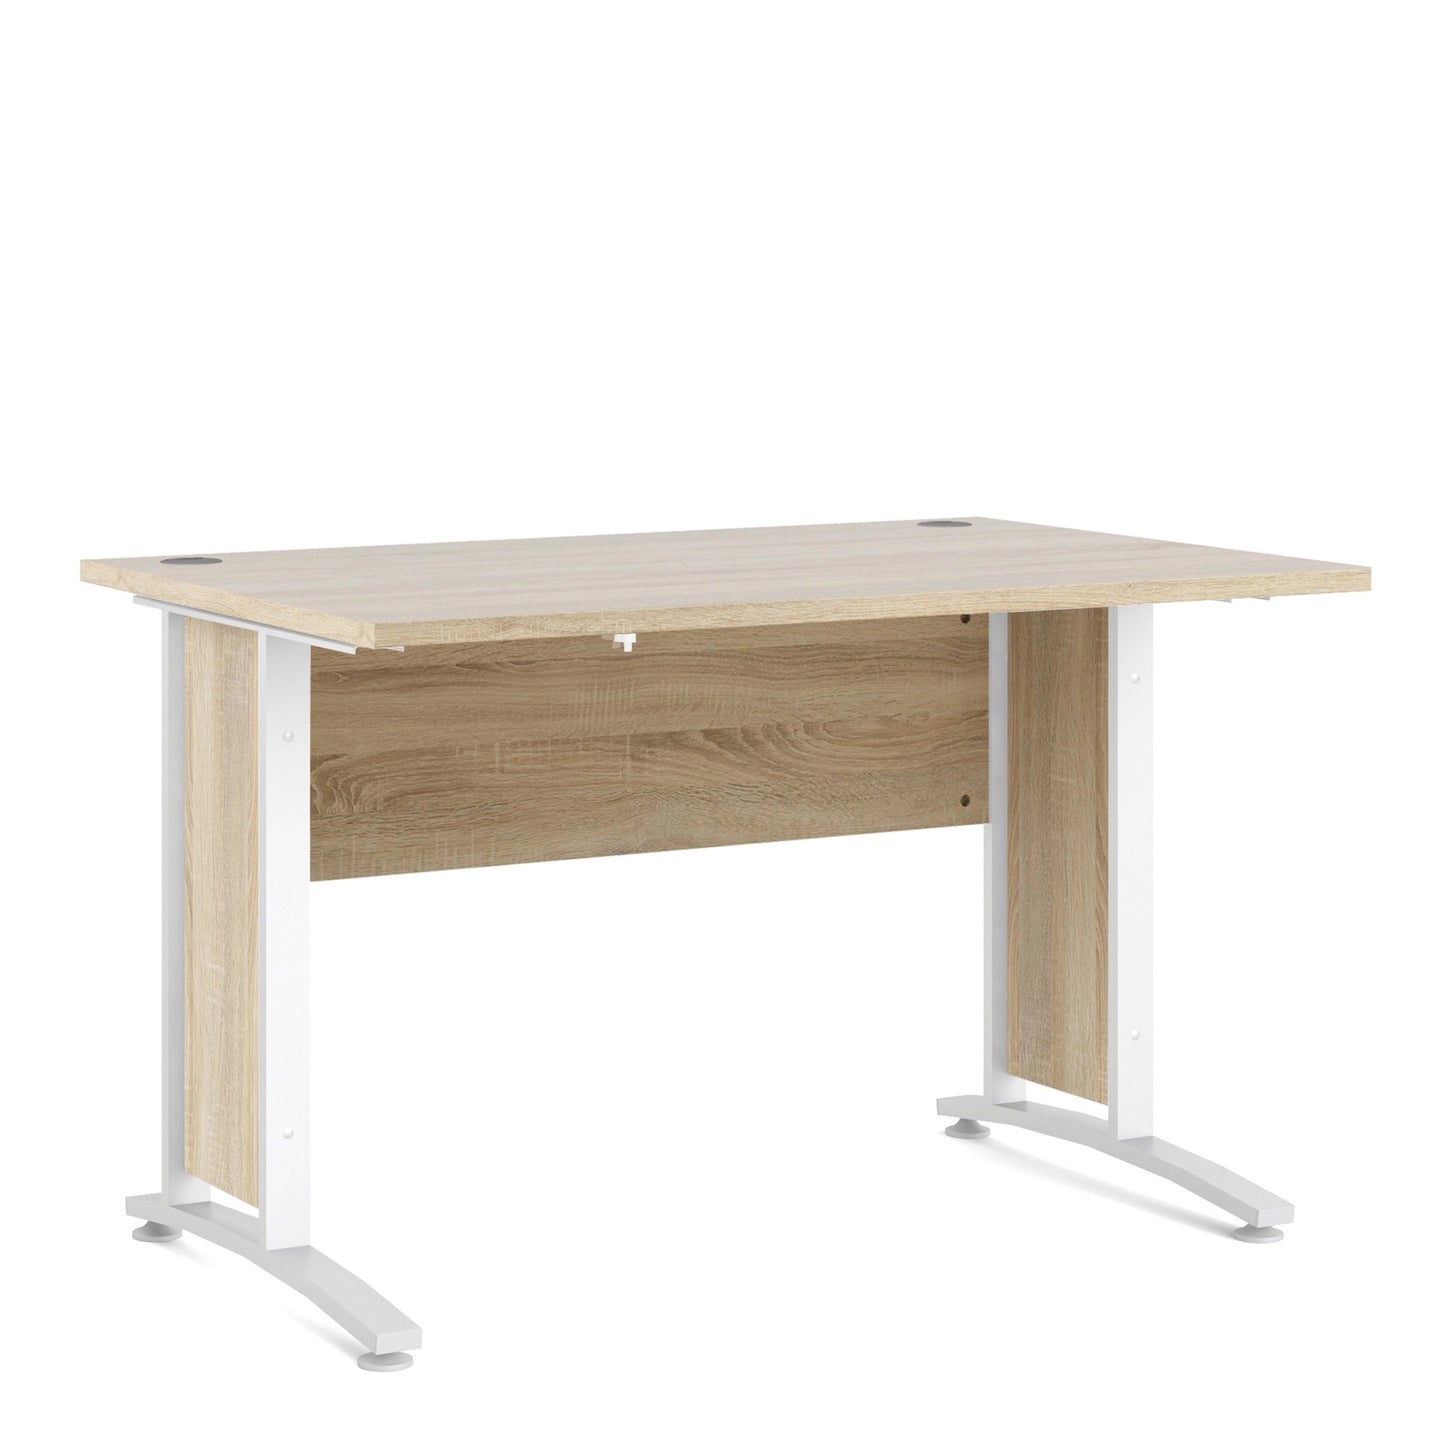 Furniture To Go Prima Desk 120cm in Oak with White Legs